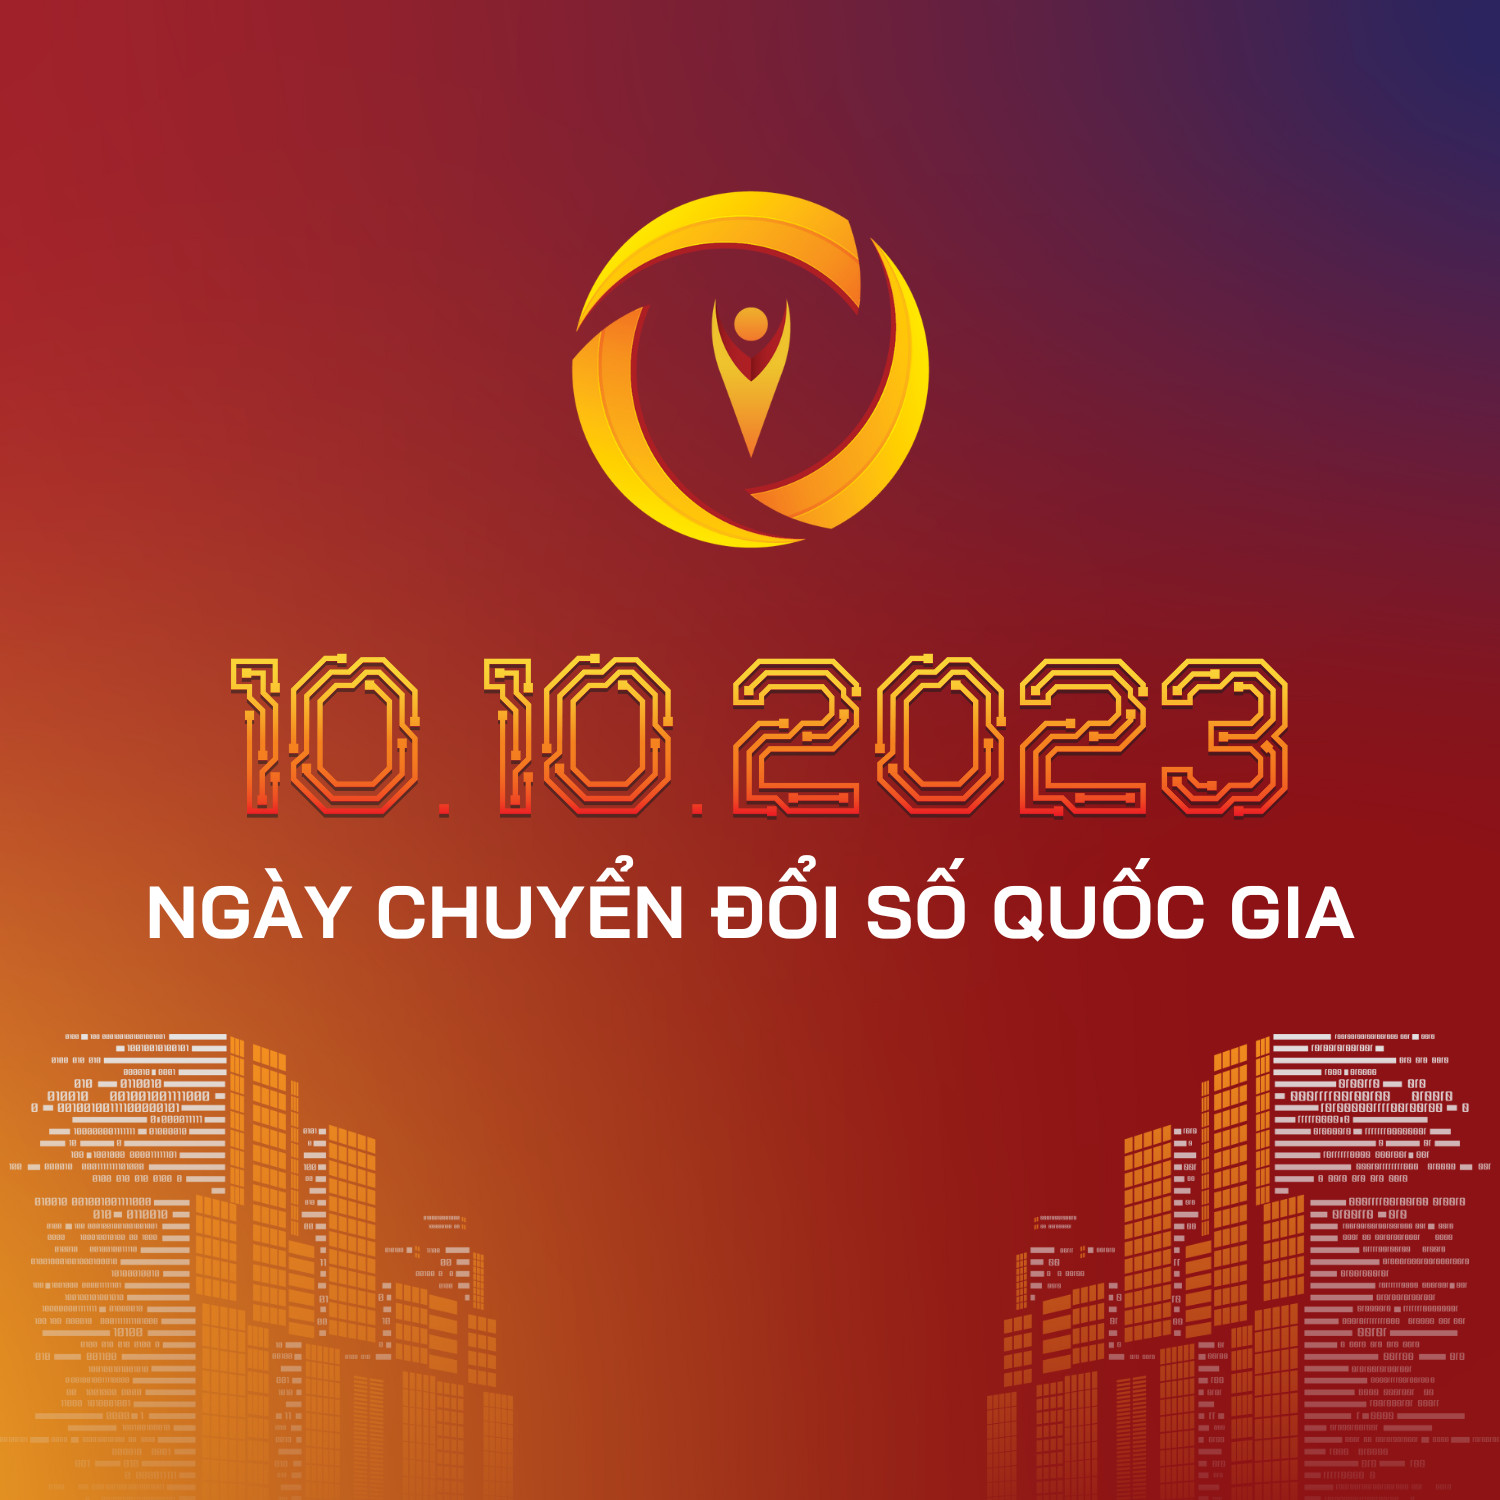 Bộ nhận diện Ngày Chuyển đổi số quốc gia năm 2023